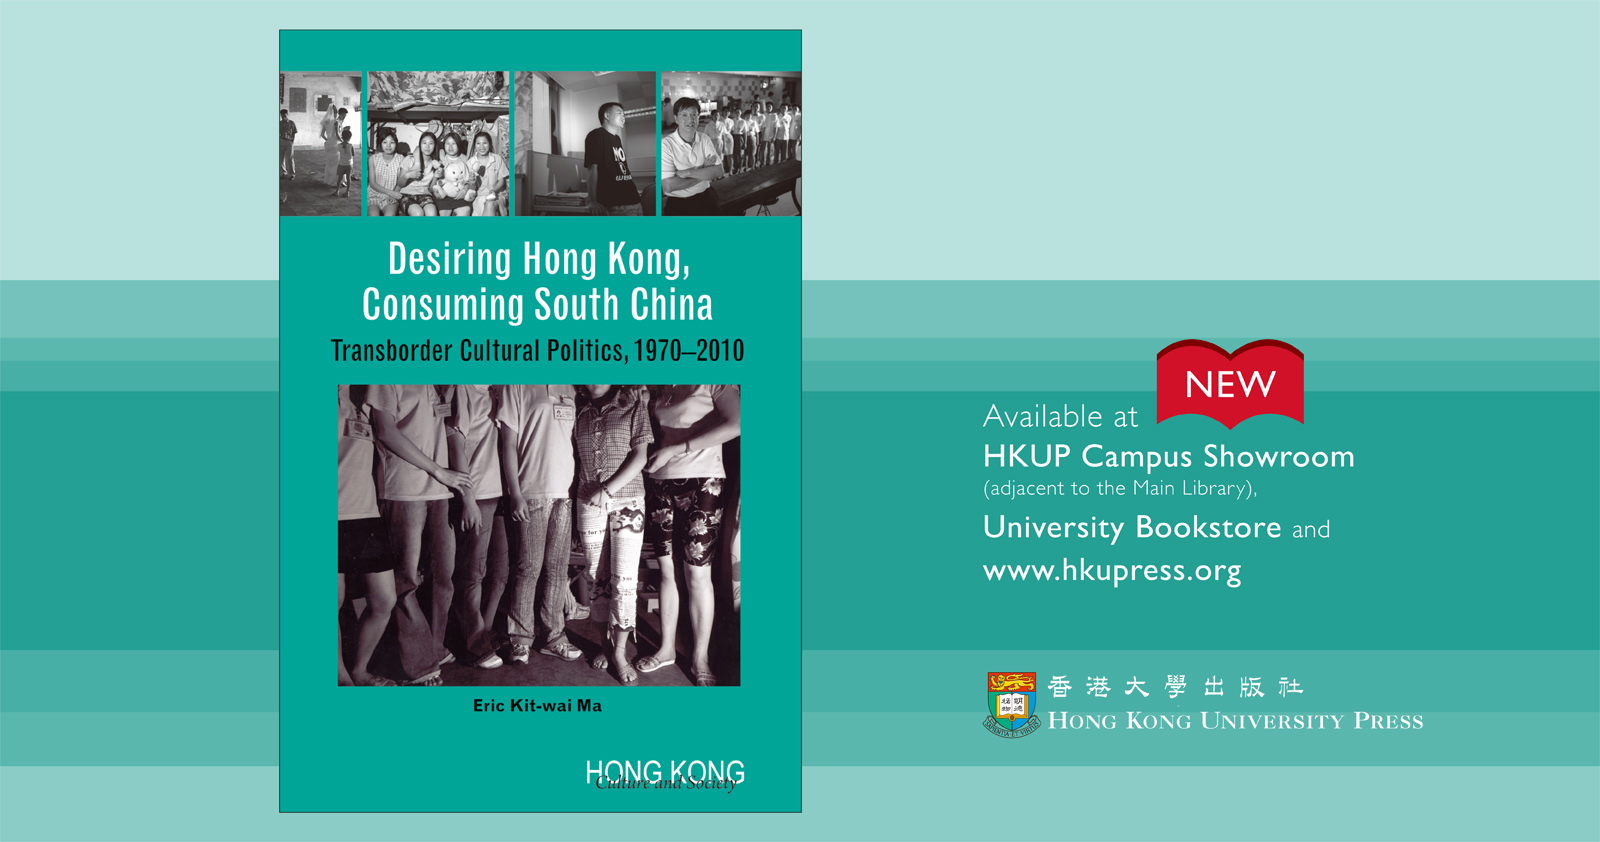 NEW from HKU Press - Desiring Hong Kong, Consuming South China